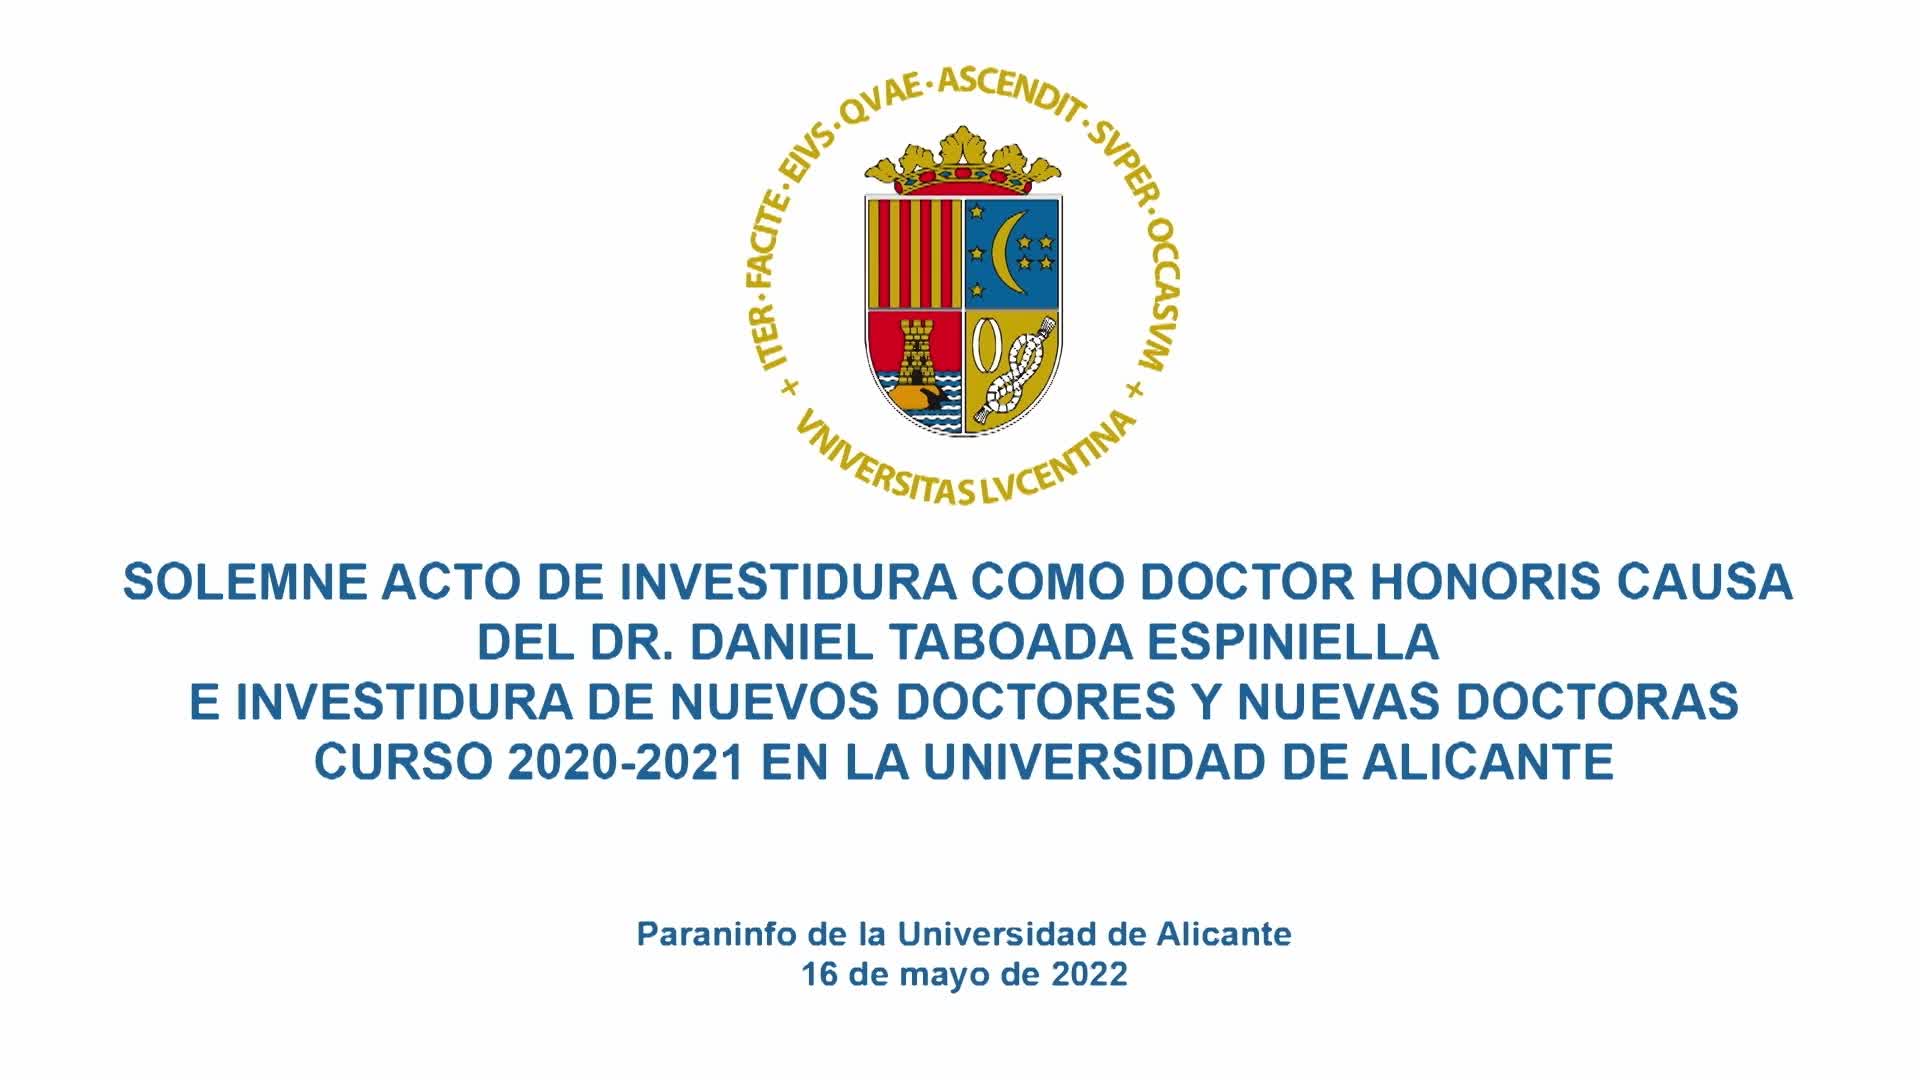 Acto de investidura de nuevas doctoras y nuevos doctores curso 2020/2021